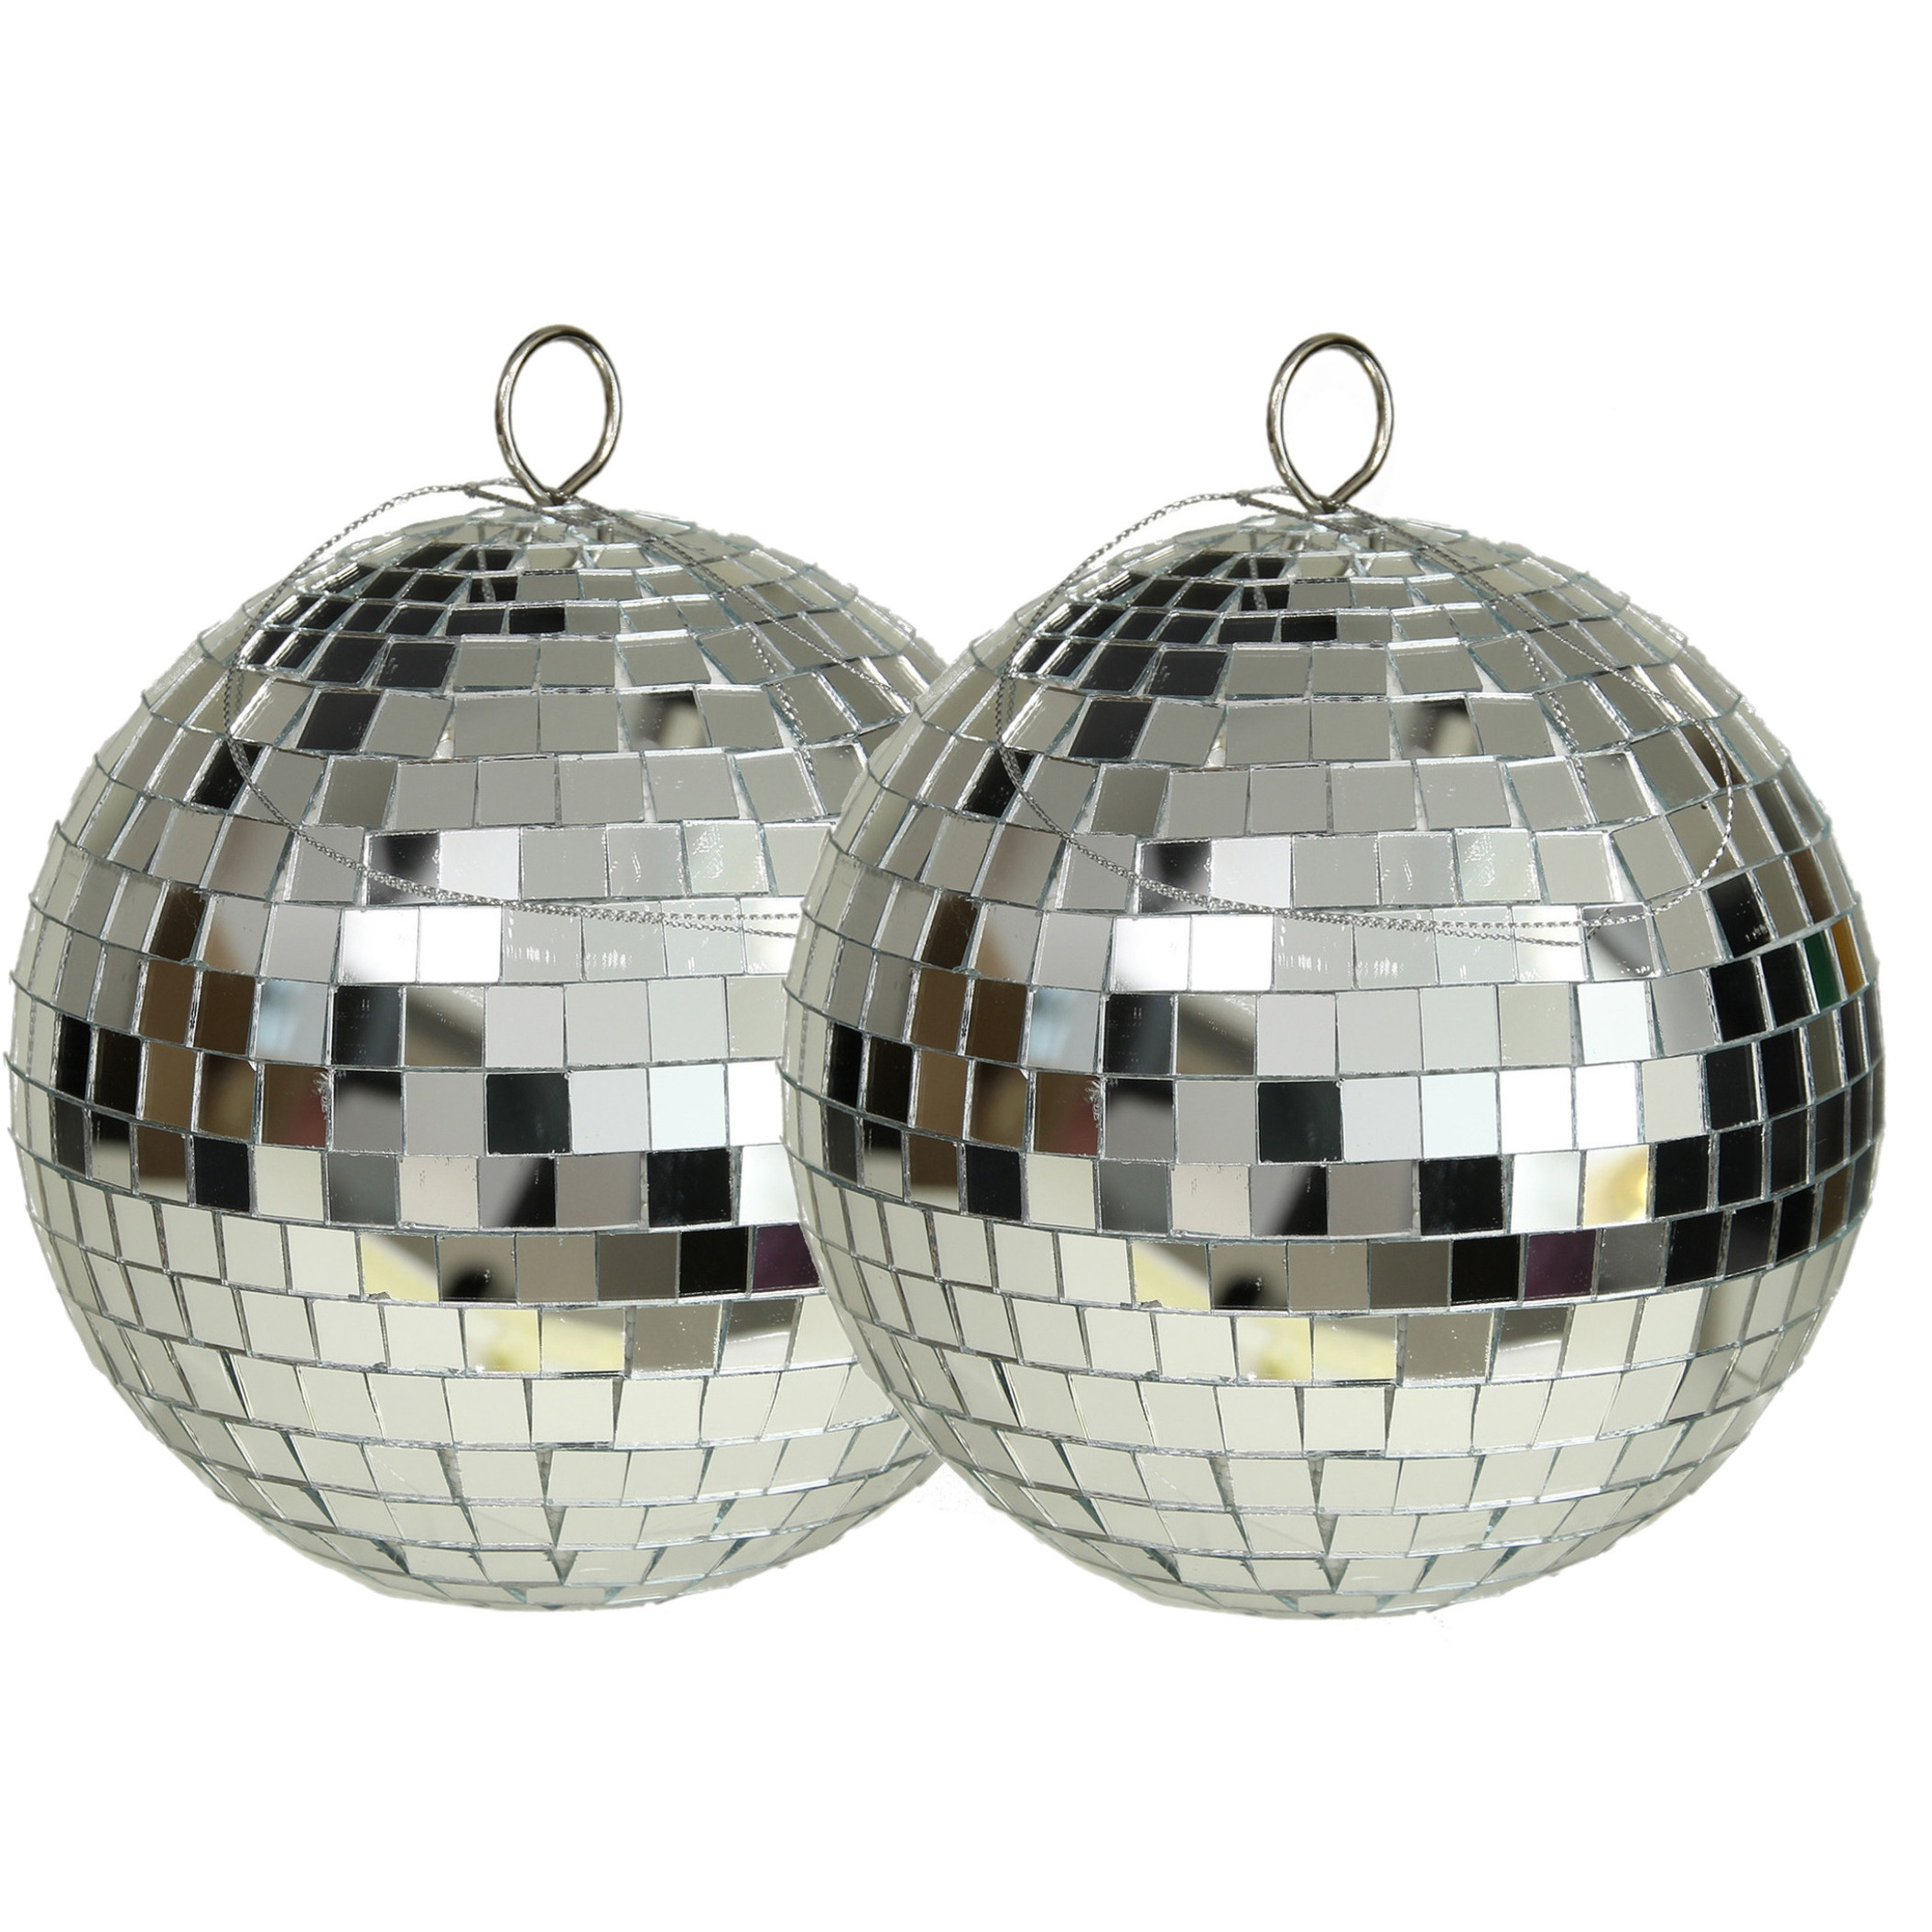 Grote discobal kerstballen 2x zilver 15 cm kunststof- spiegelbol